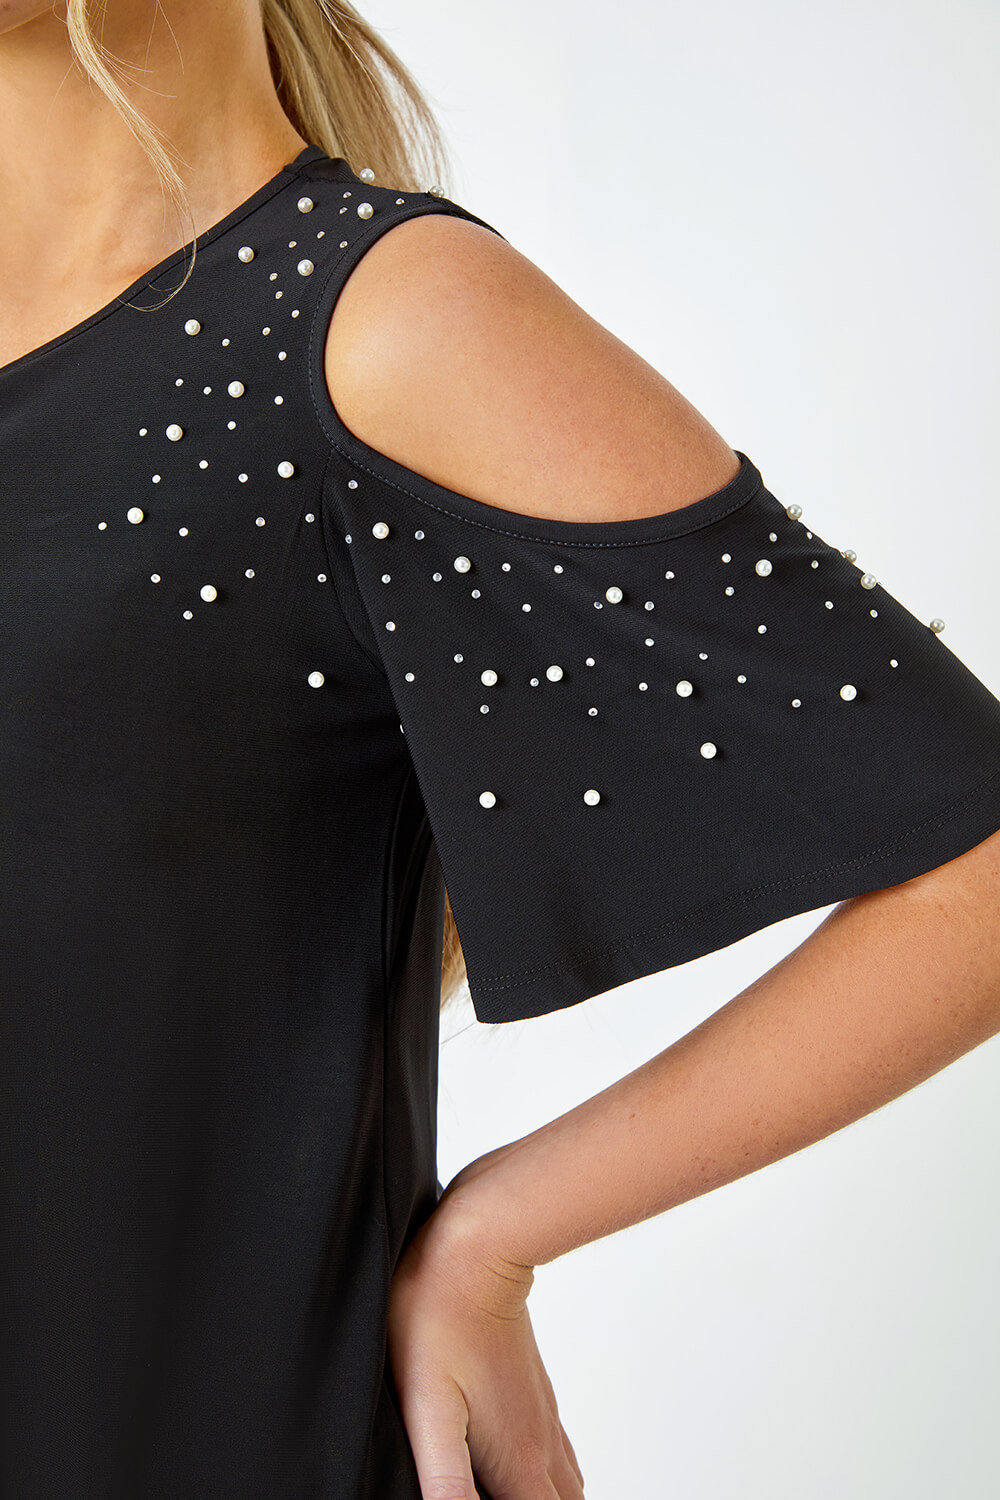 Black Petite Sparkle Cold Shoulder Dress, Image 5 of 5